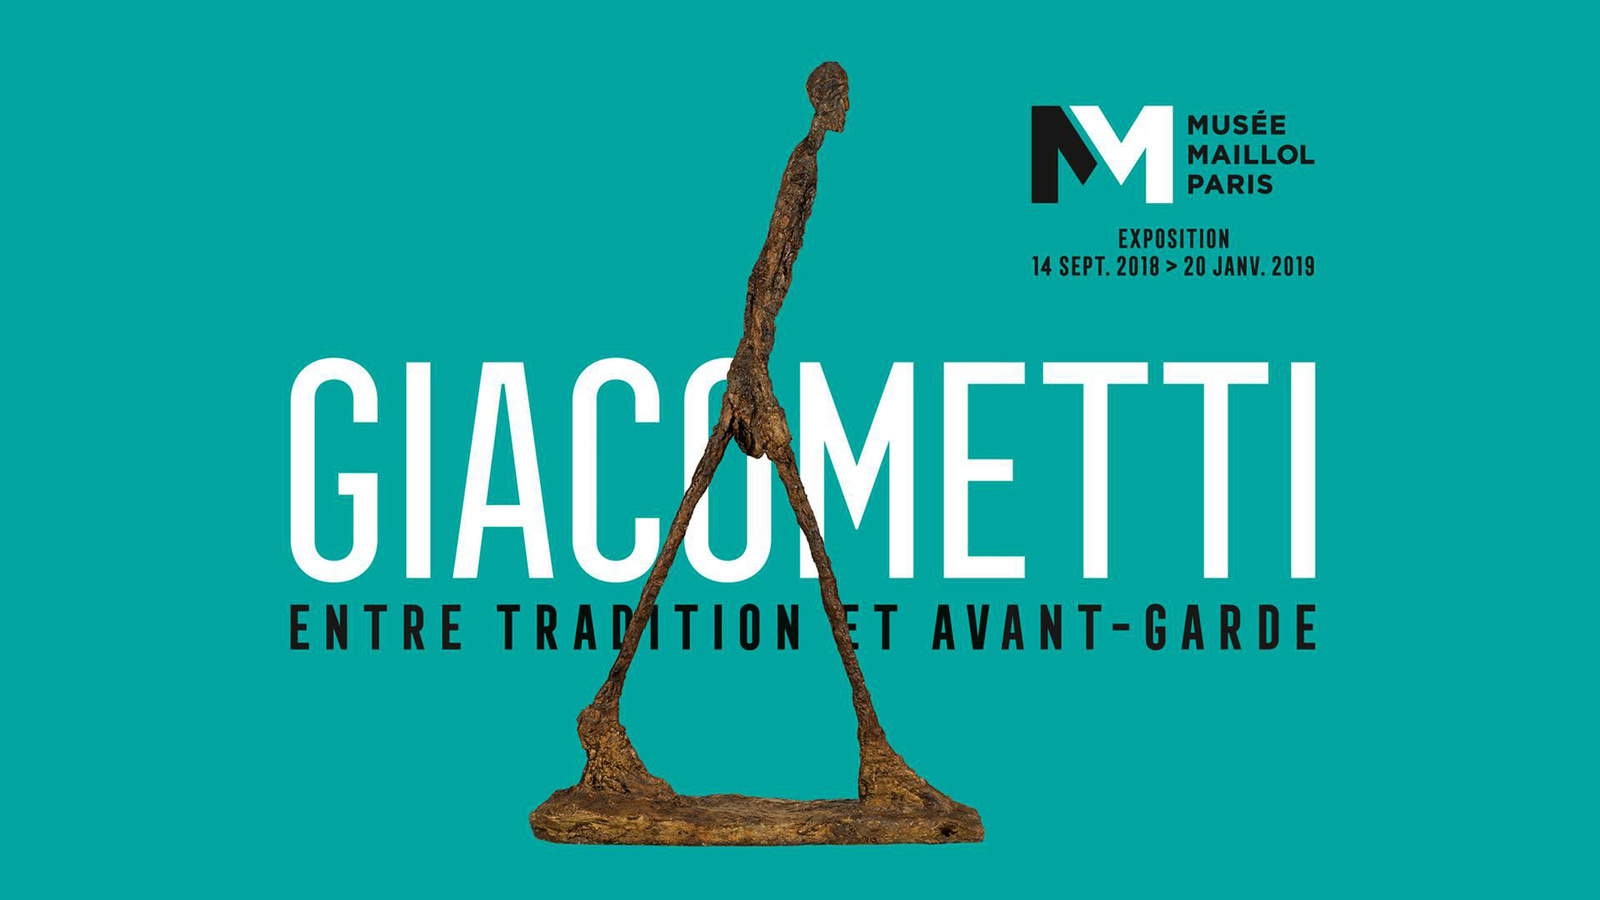 Giacometti, entre tradition et avant-garde